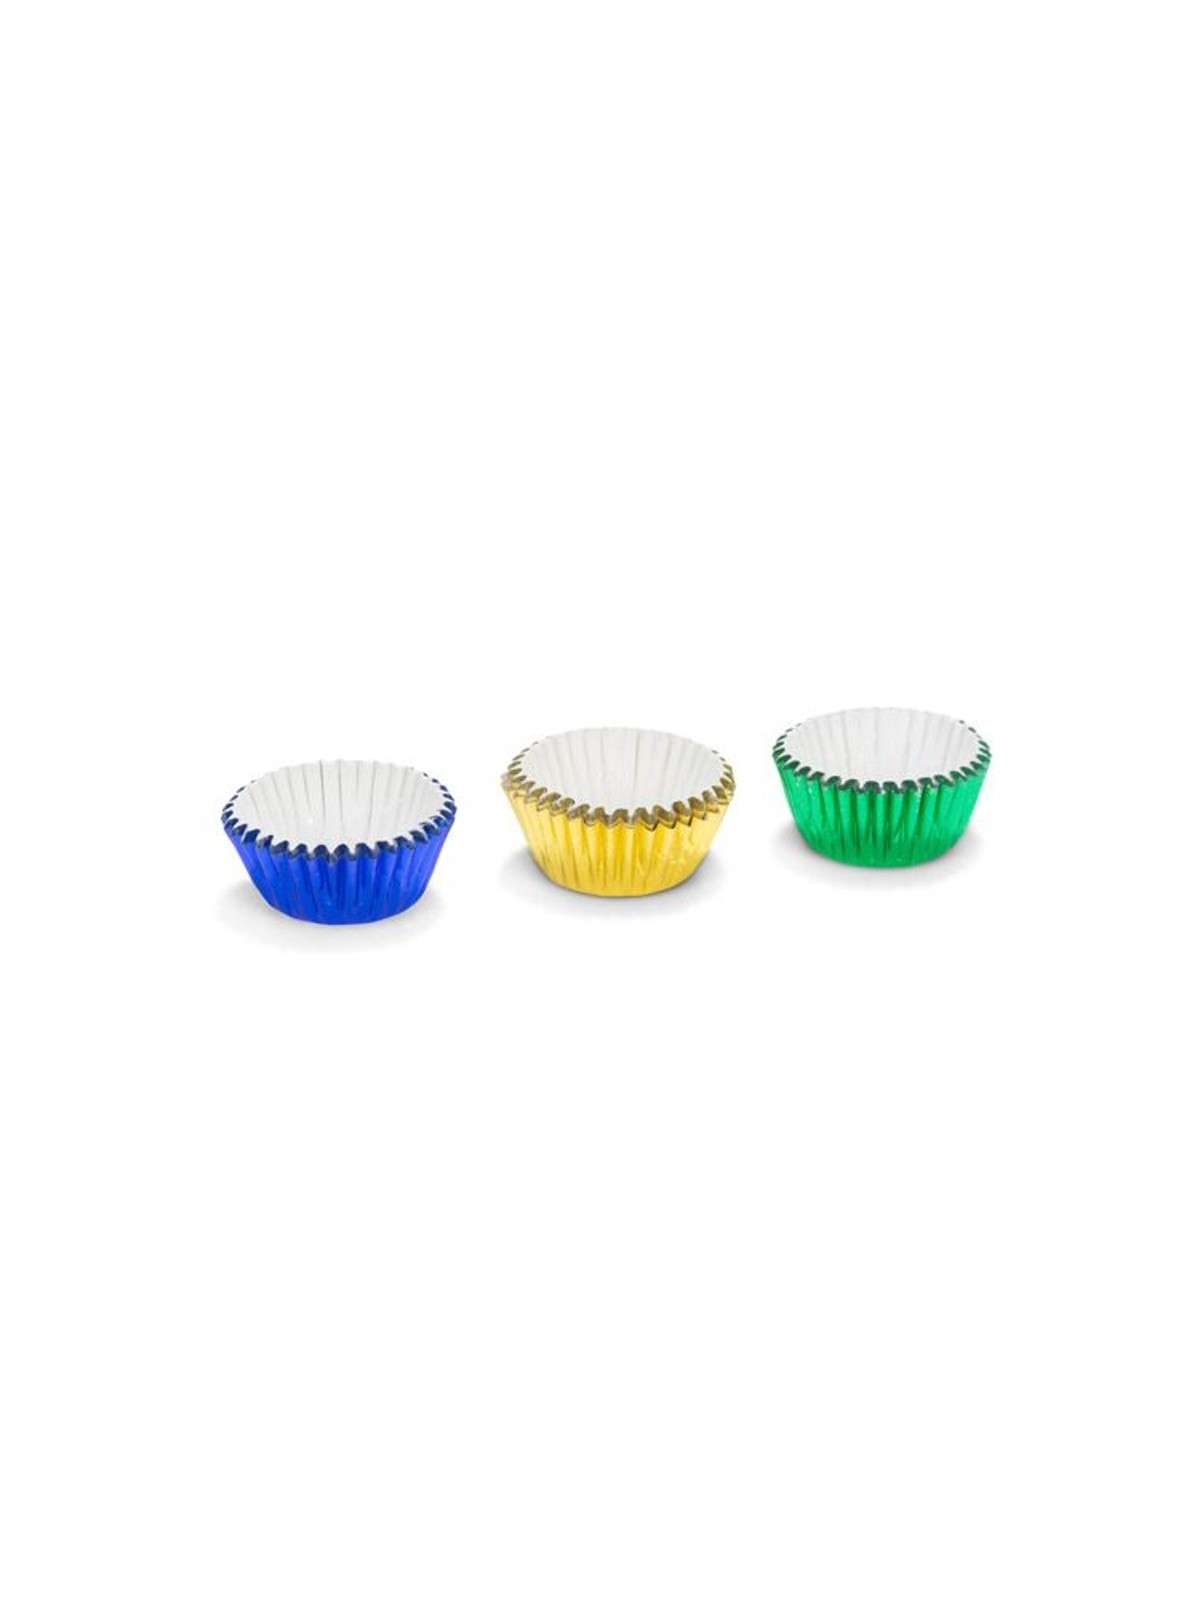 Patisse cukrárske MINI košíčky 2,7 x 1,7cm - zelené / žlté / modré - 75ks